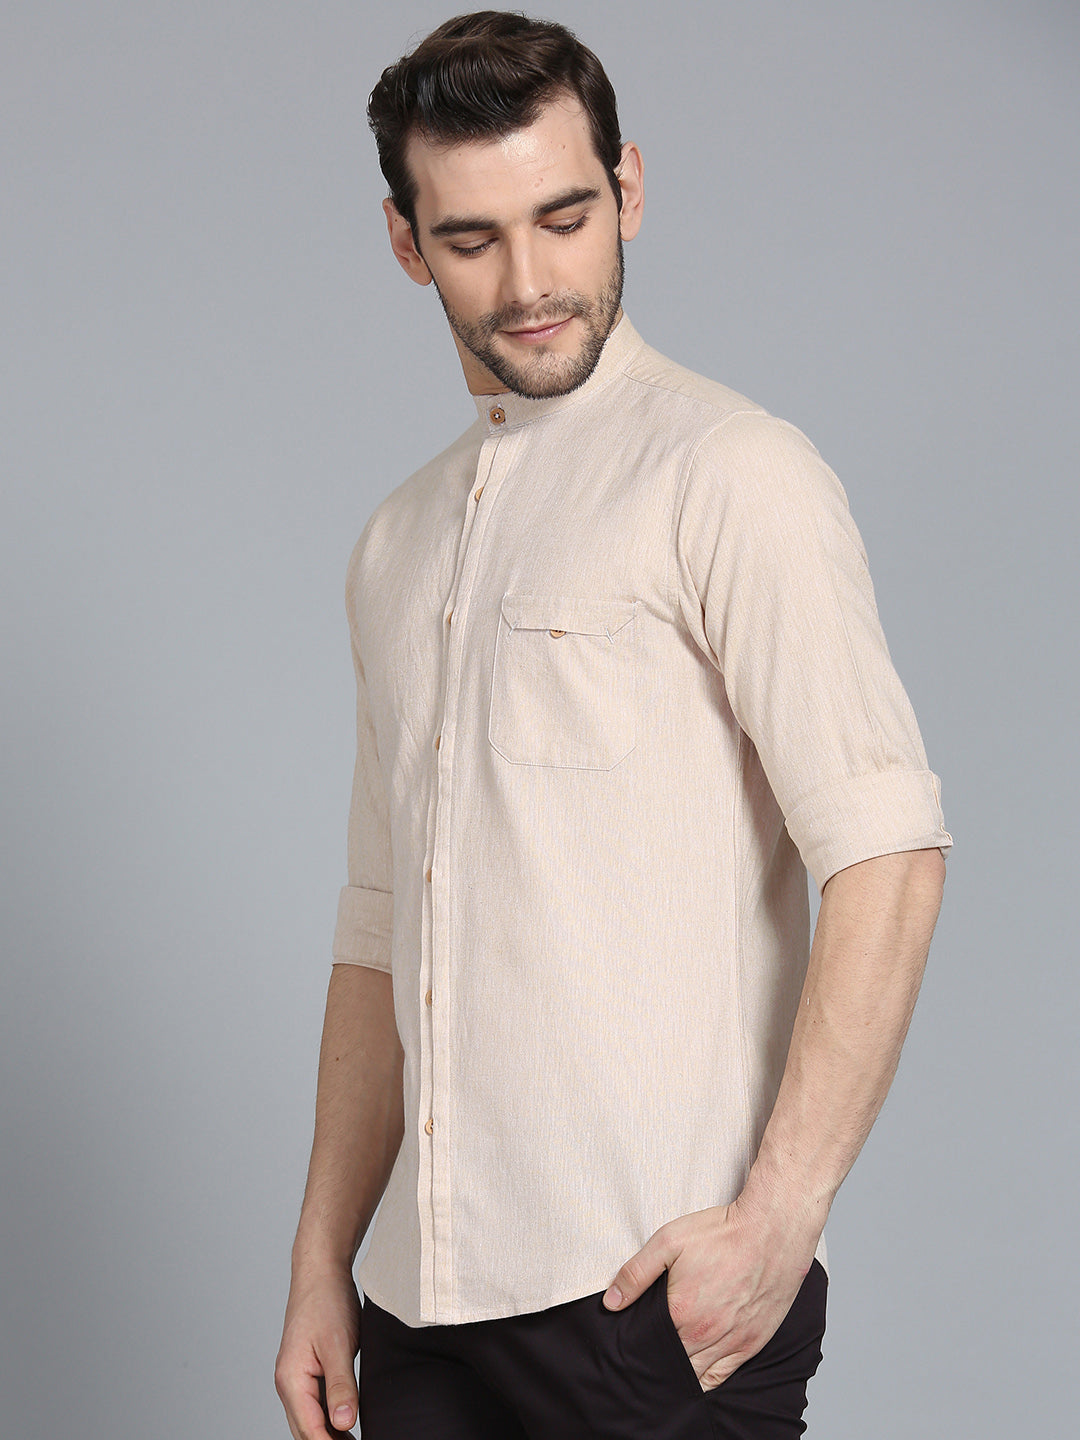 Light Beige Linen Shirt With Placket Details Shirt